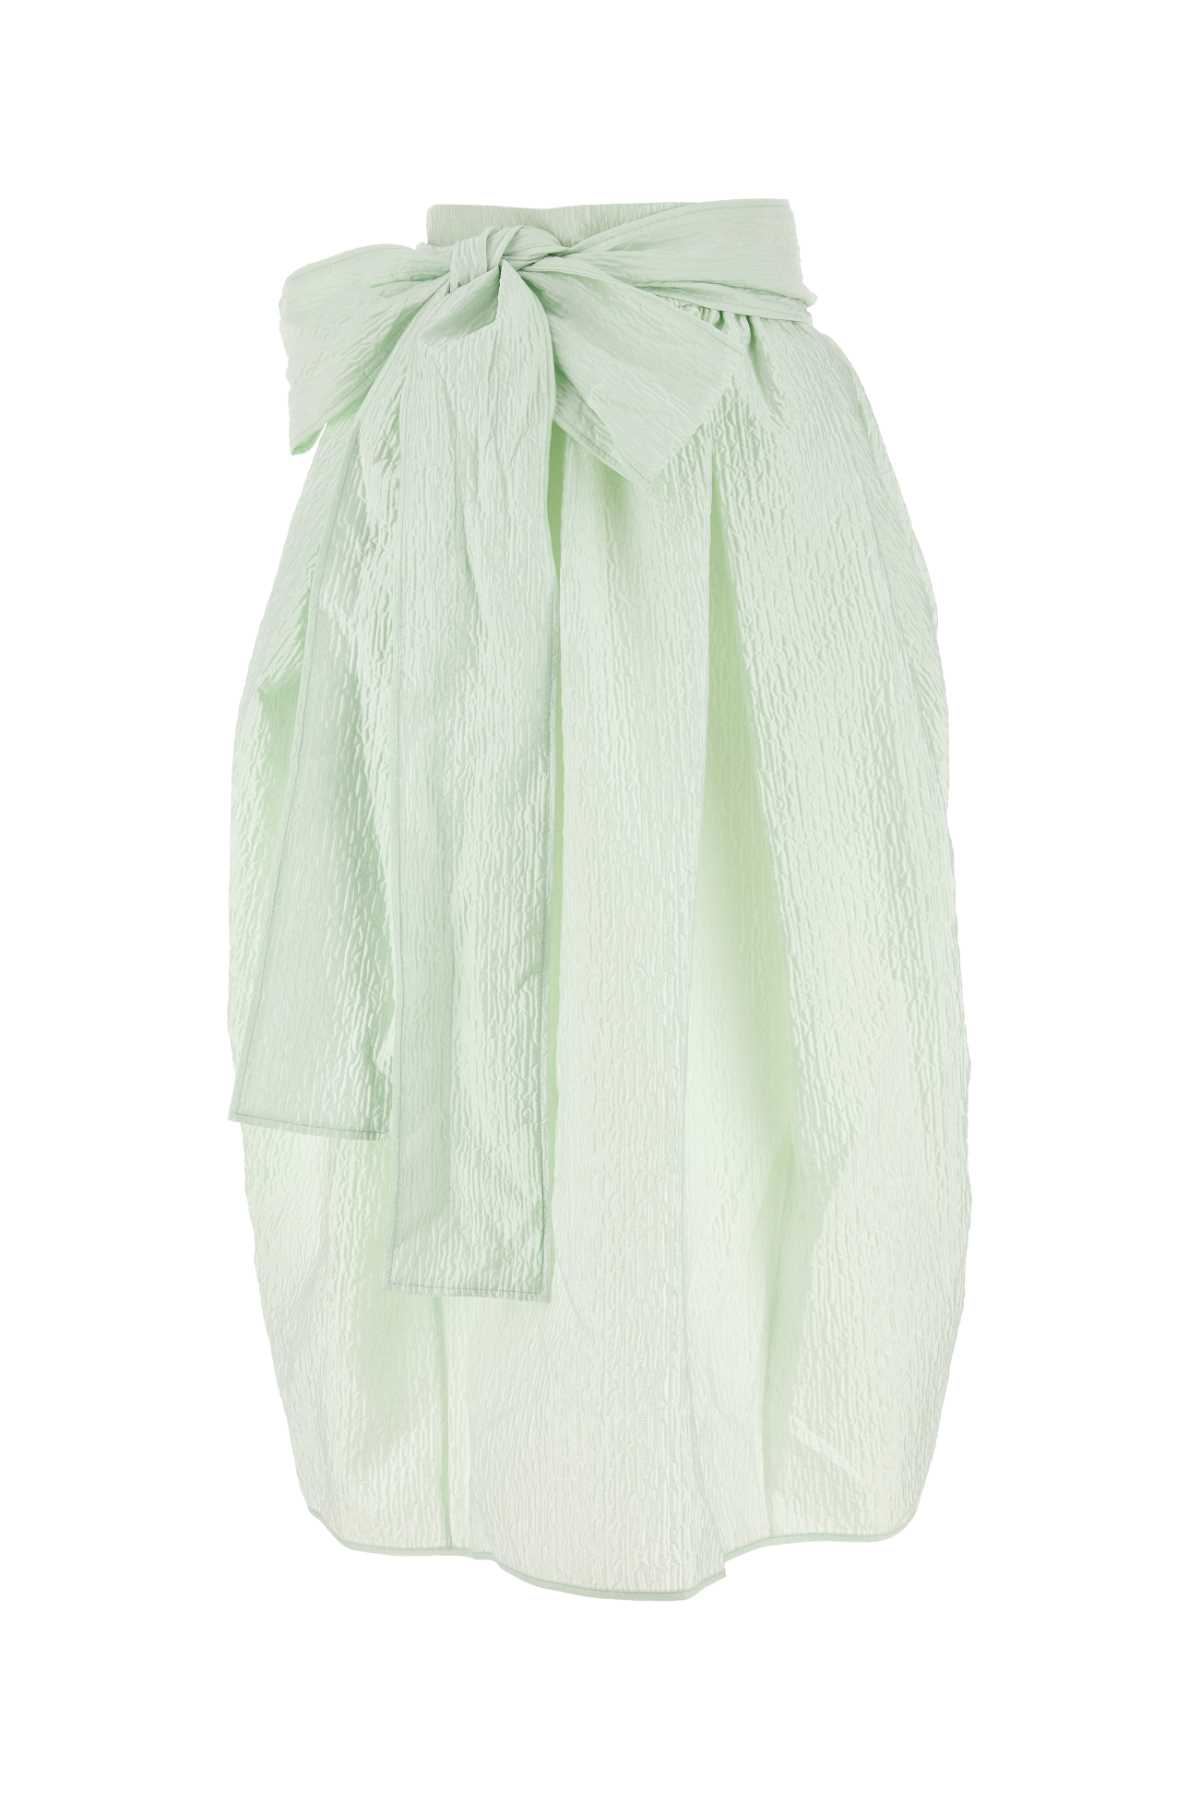 Mint Green Polyester Blend Skirt